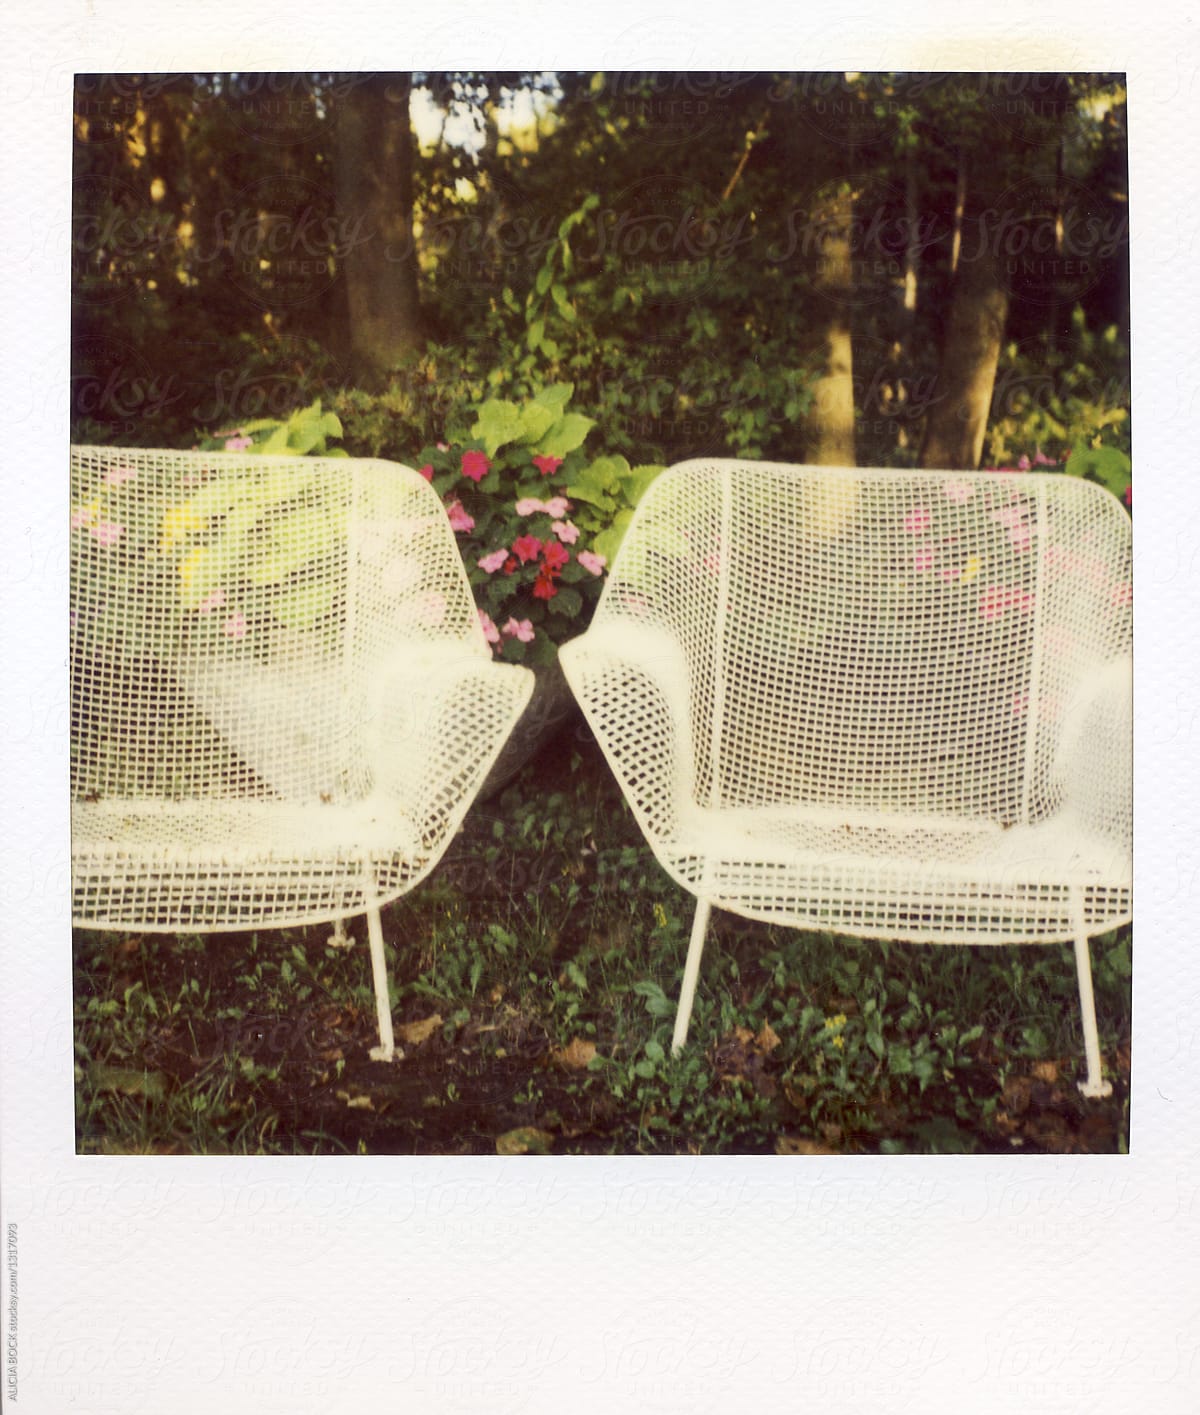 summer garden chairs